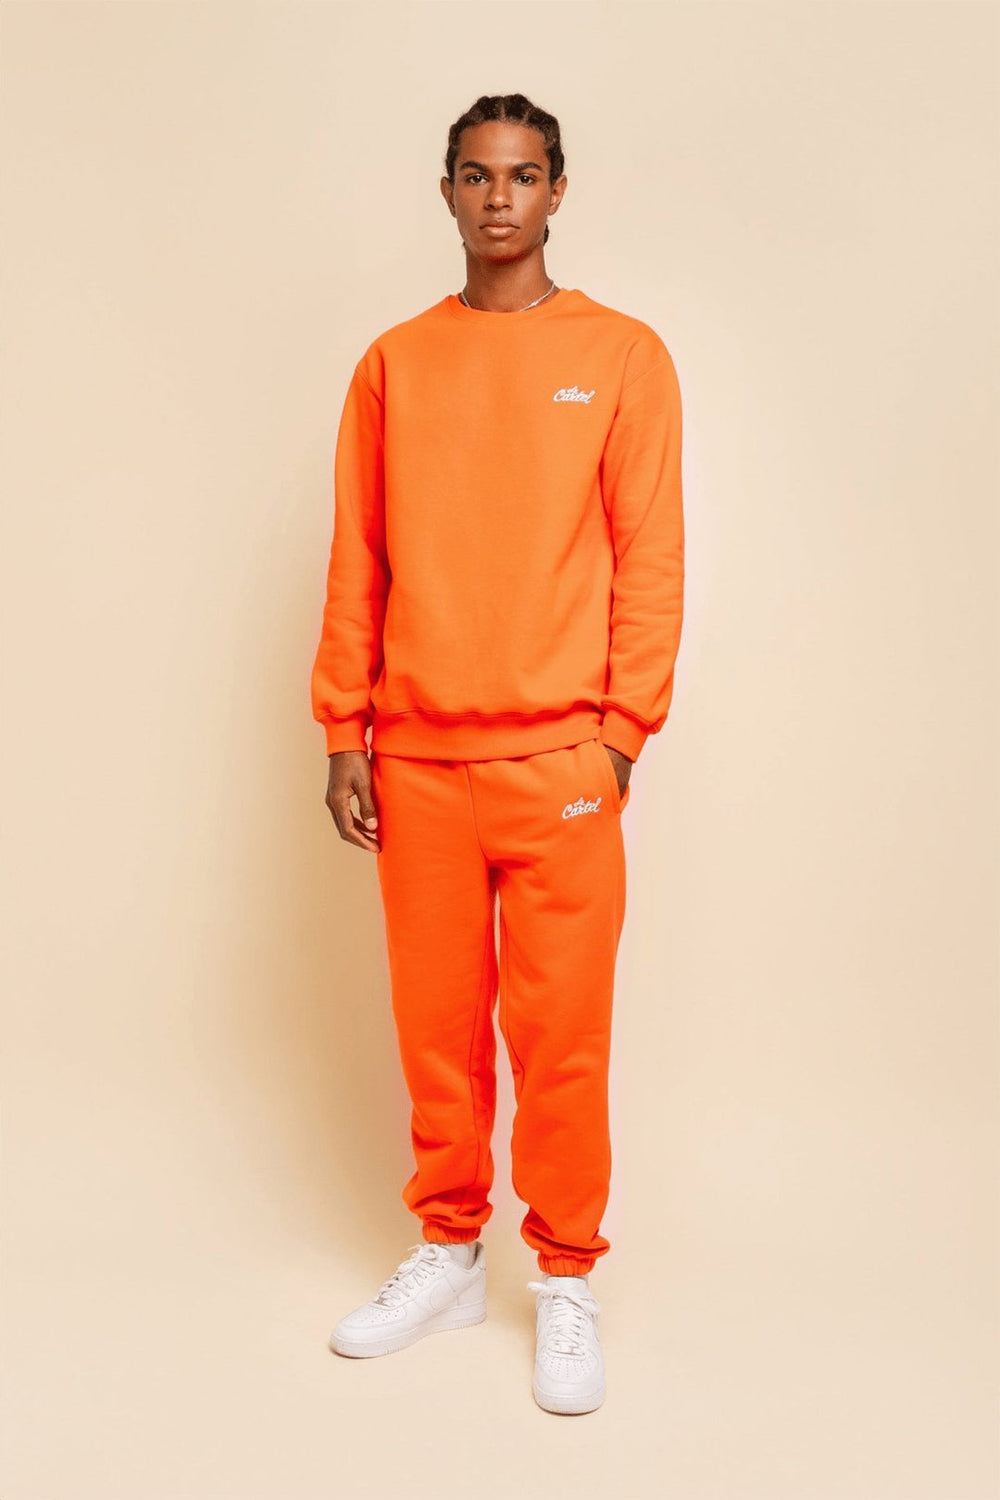 OG・Pantalon unisexe・Orange - Le Cartel